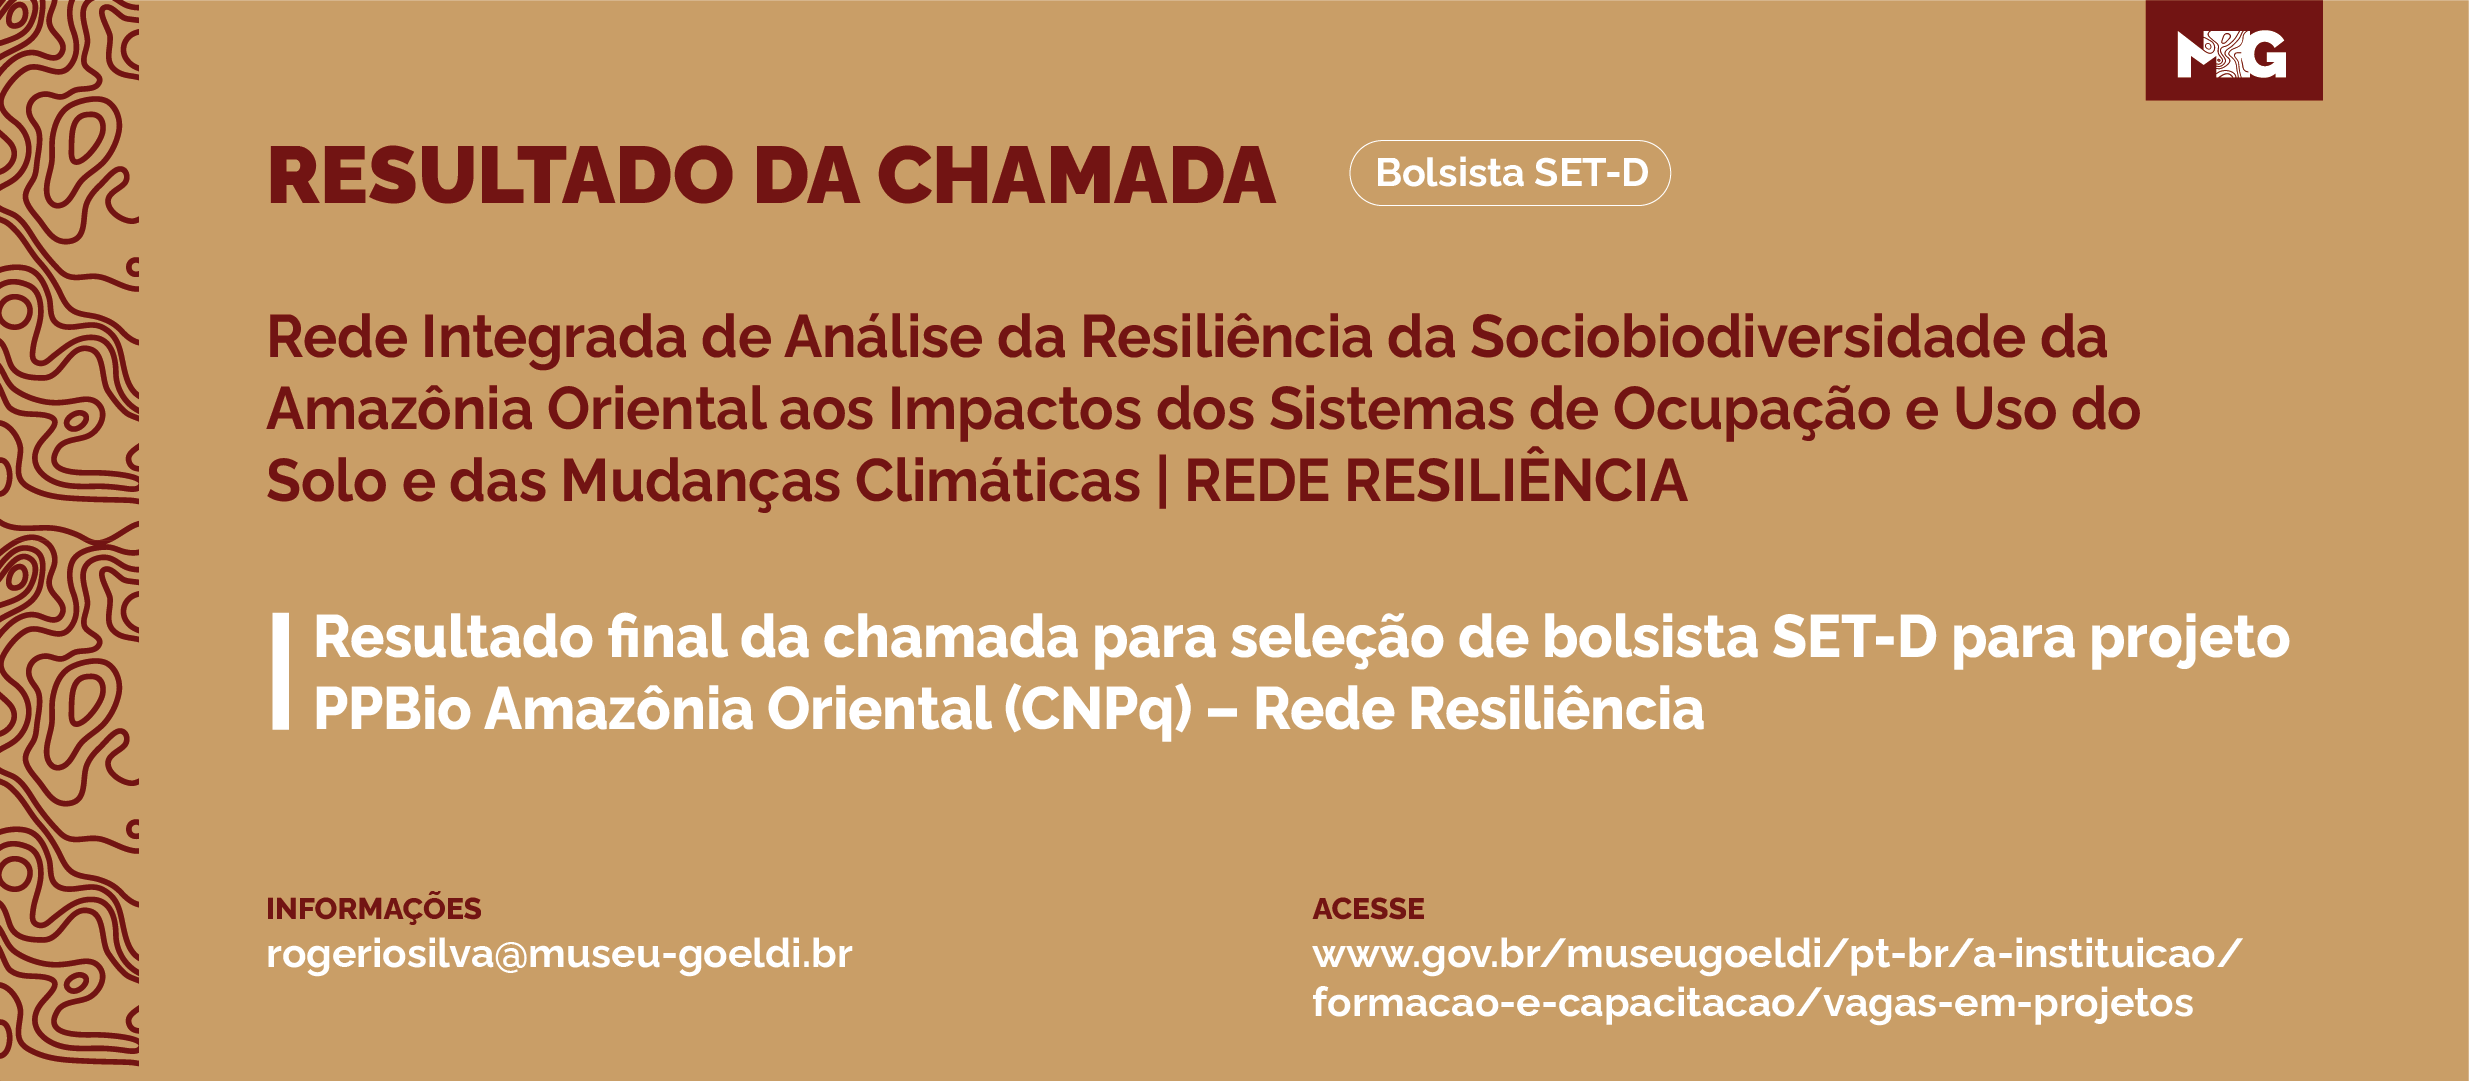 Resultado final da chamada para seleção de bolsistas SET-D para o projeto PPBio Amazônia Oriental (CNPq) – Rede Resiliência